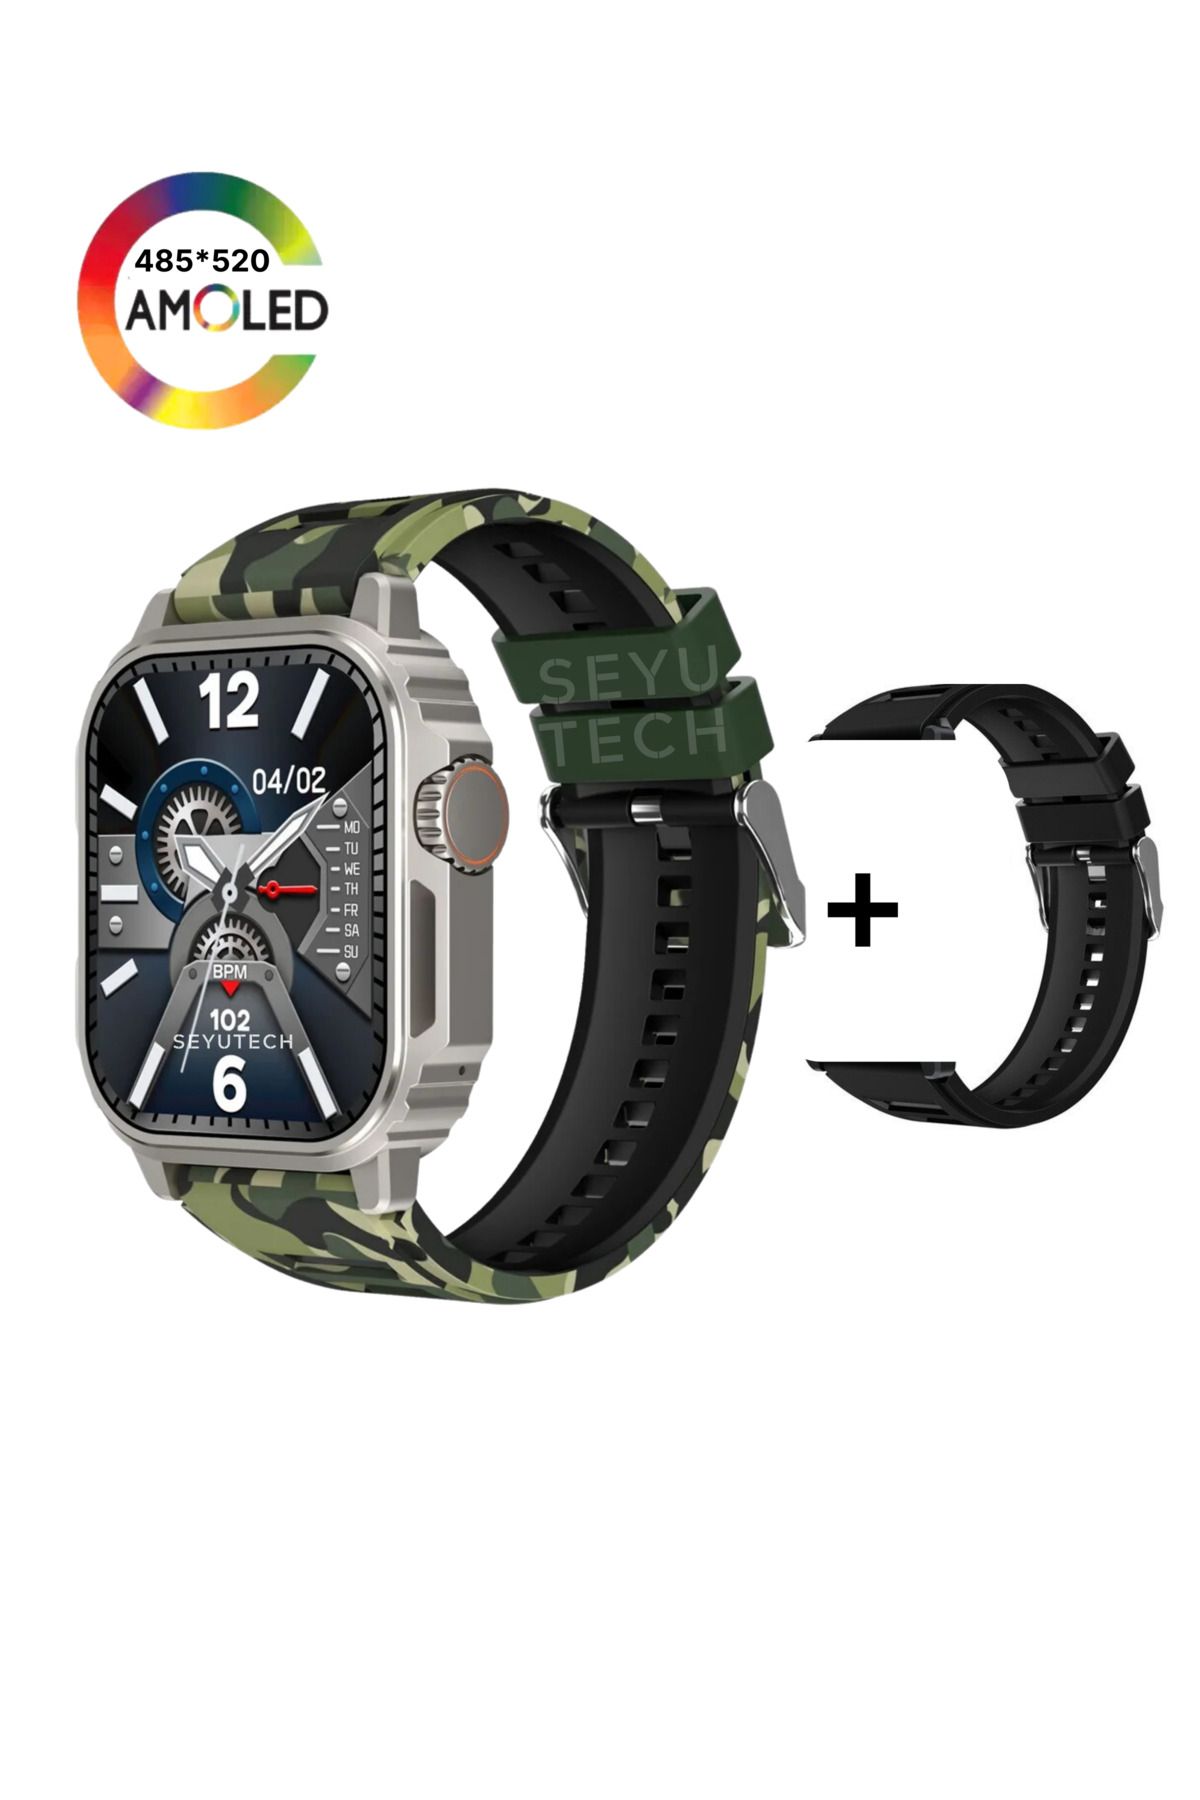 SeyuTech Watch Tank Pro Akıllı Saat Ultra Dayanıklı Iphone Ve Android Tüm Telefonlara Uyumlu Smartwatch